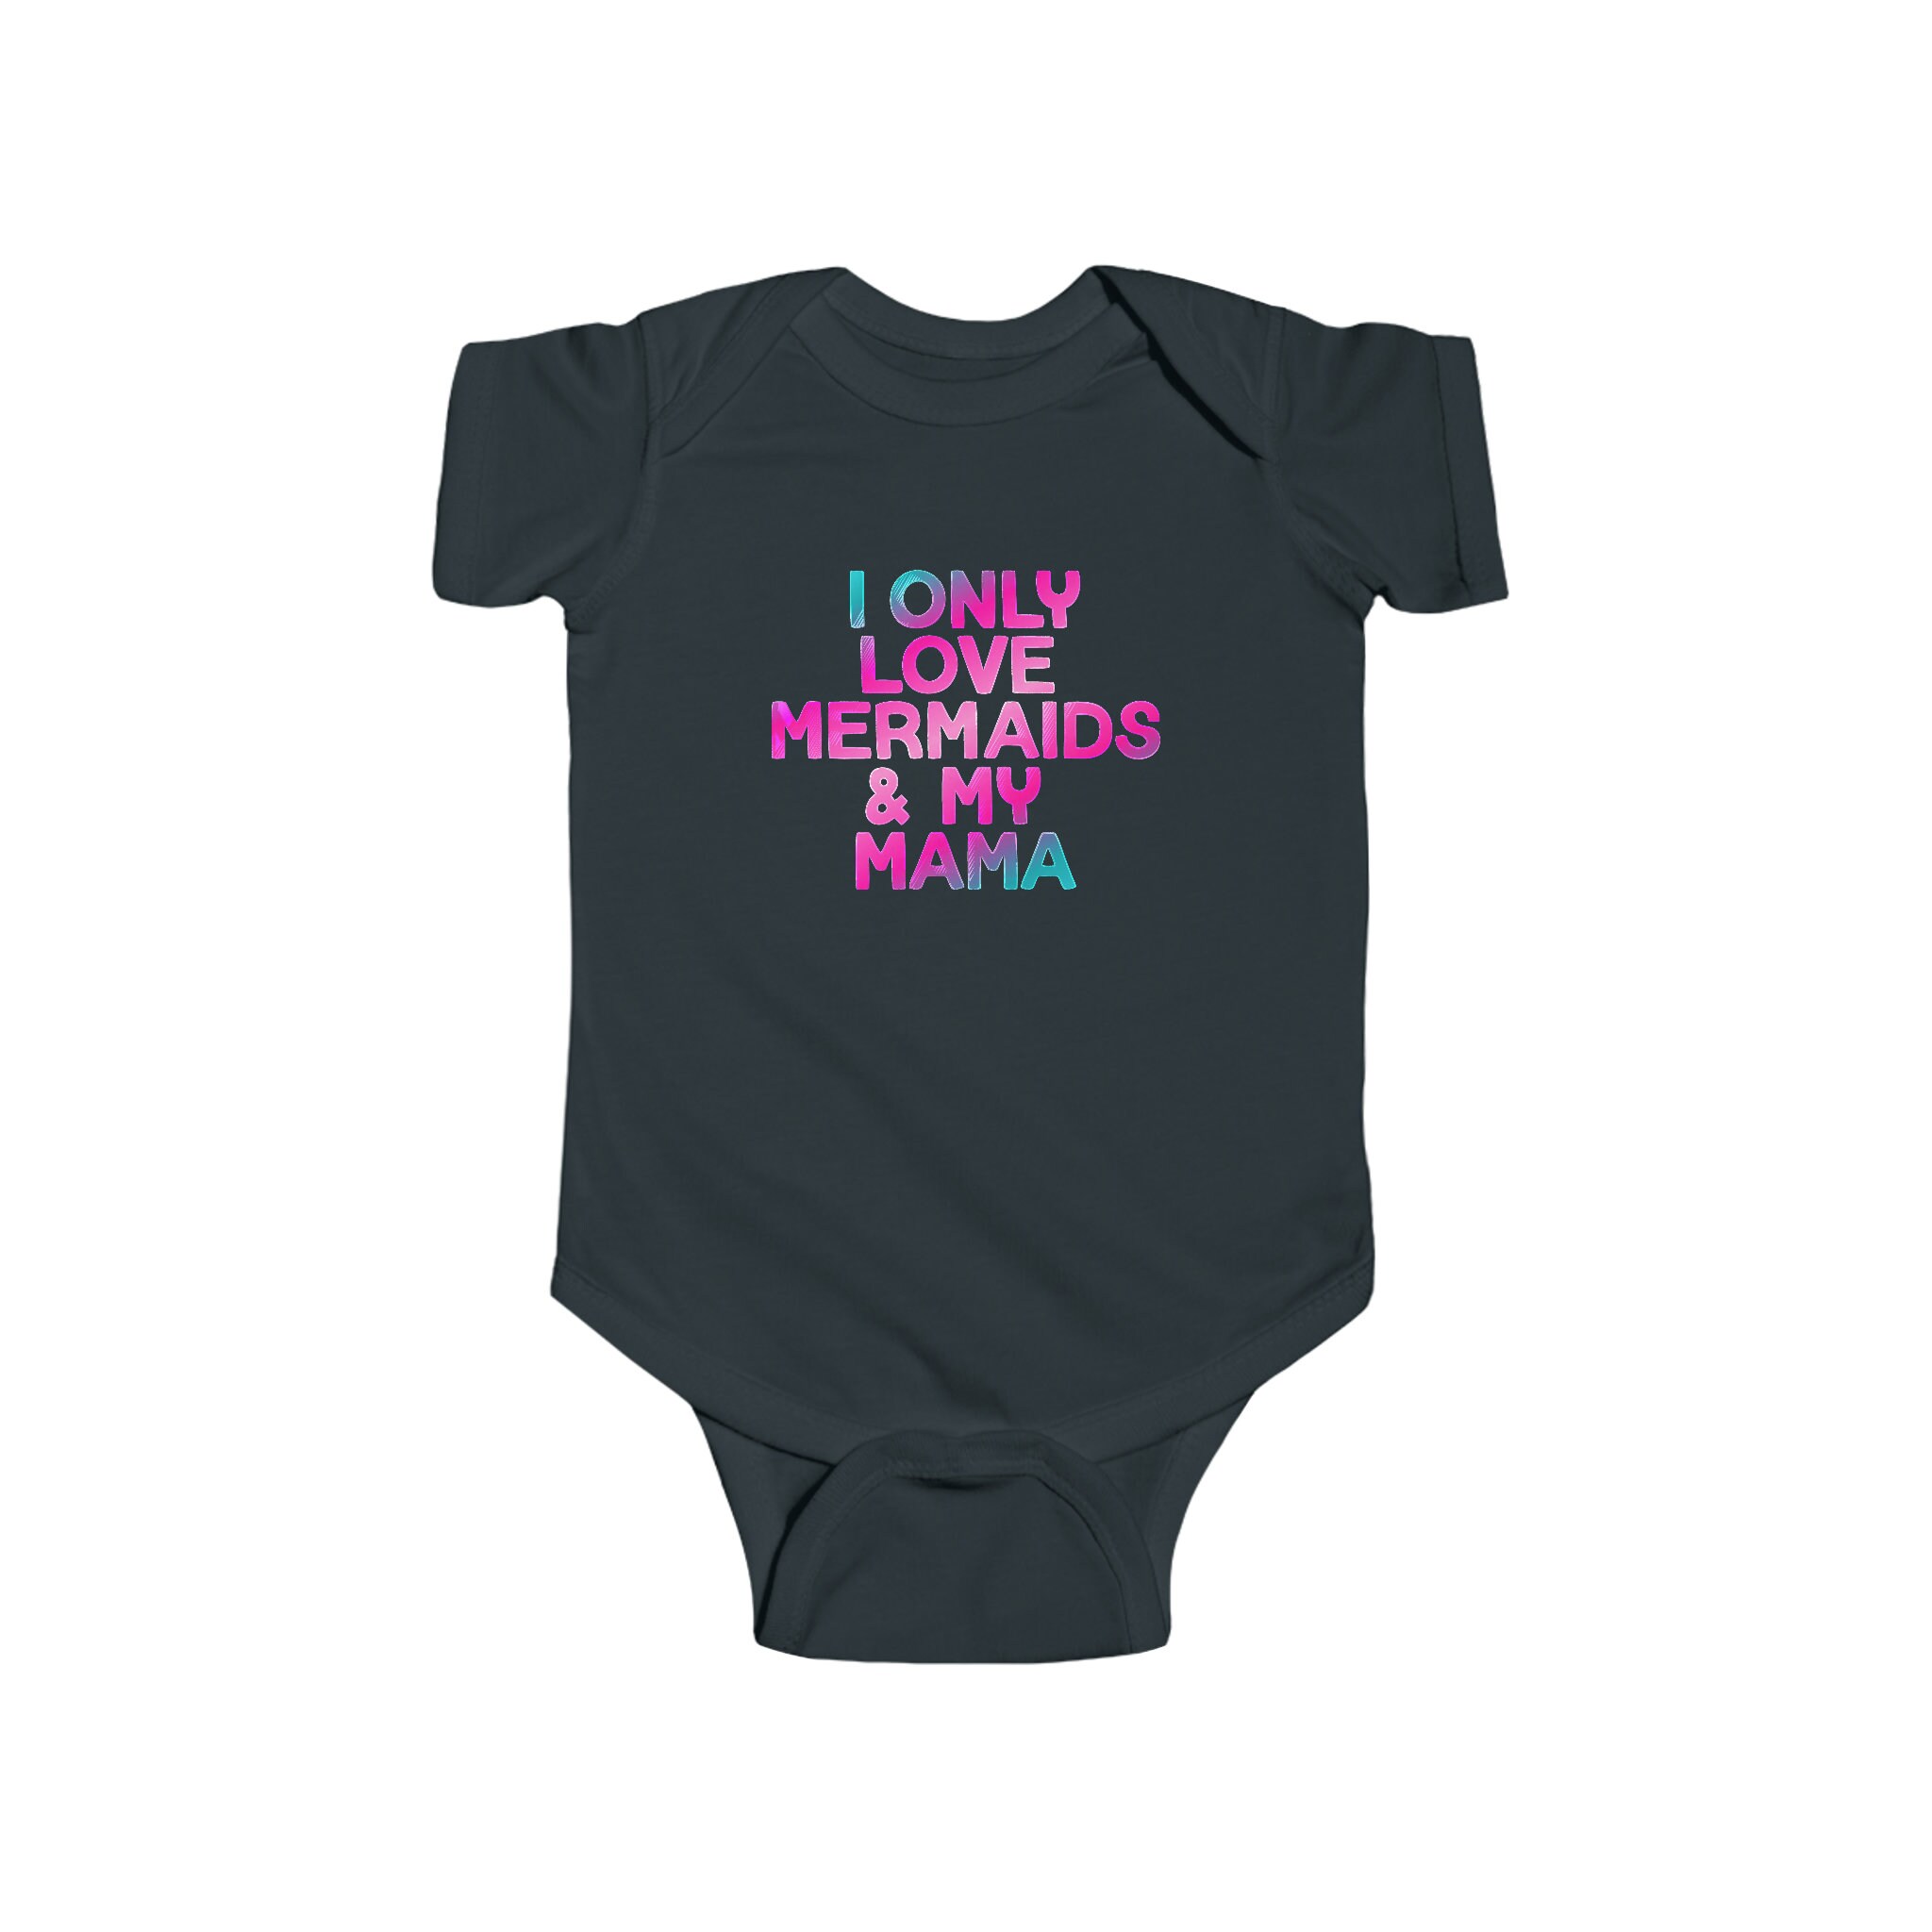 Discover Mermaid Baby Bodysuit, Mermaid Baby Shirt, Cute Baby